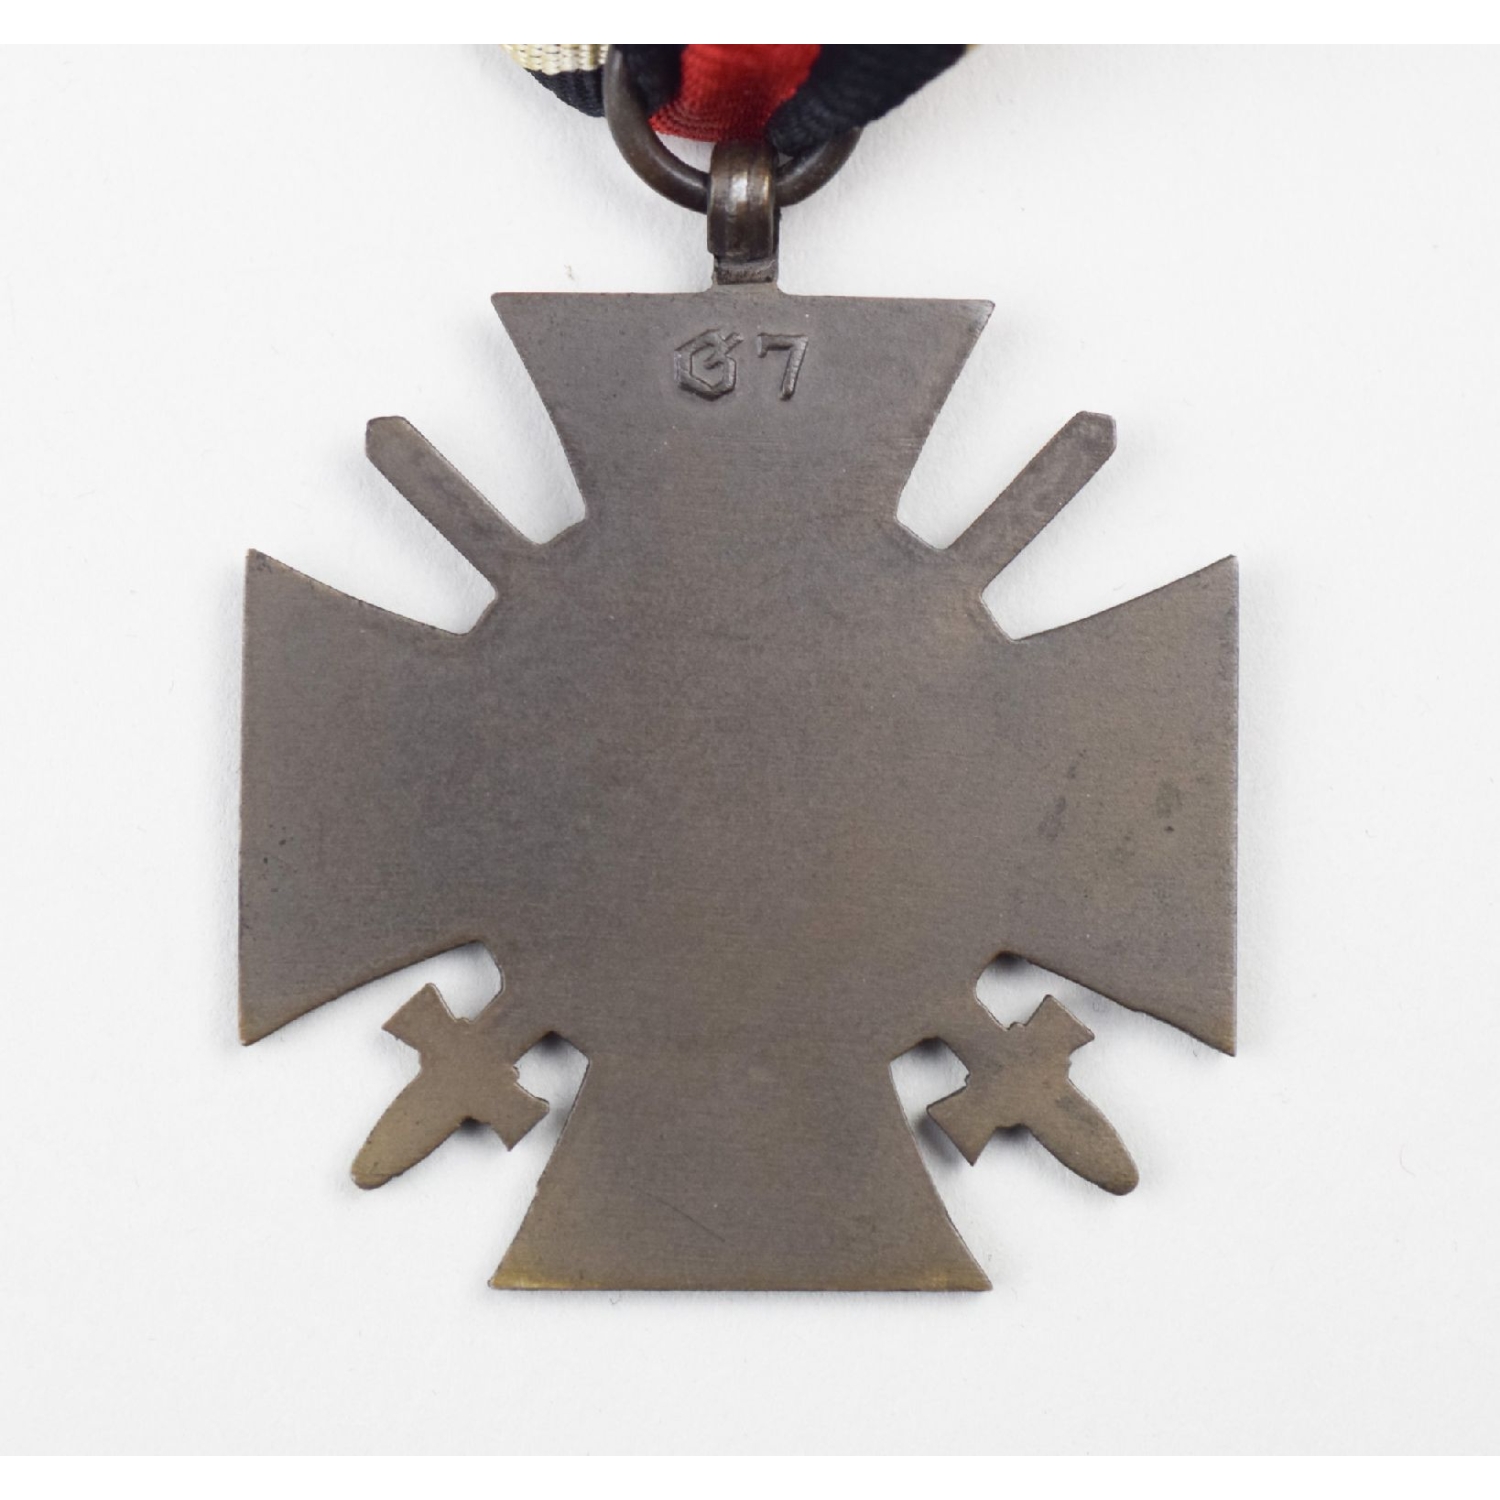 Ehrenkreuz Für Frontkämpfer mit Hersteller "G7"